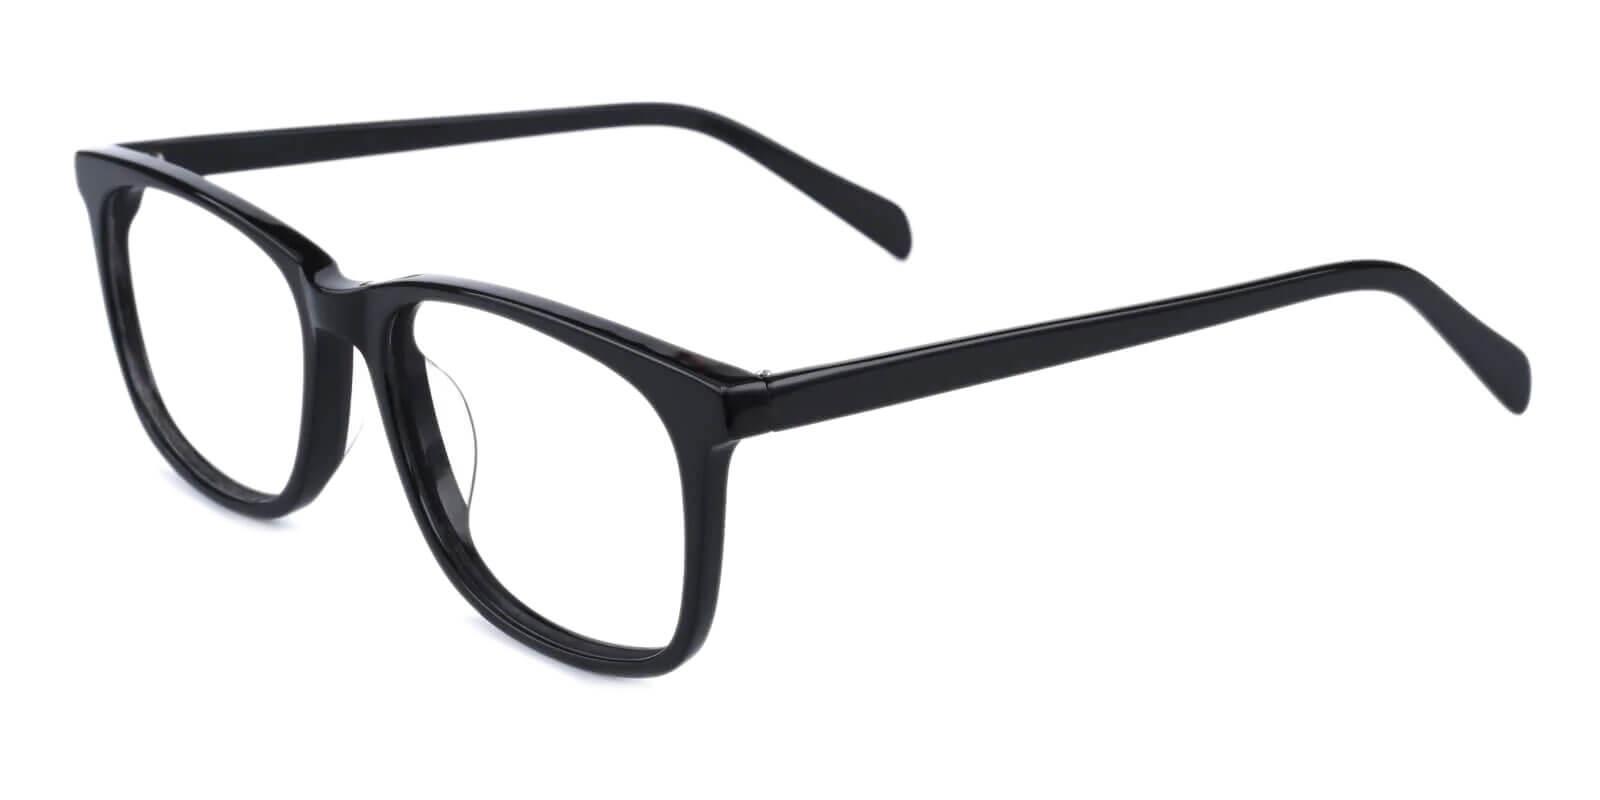 Plaza Black Acetate Eyeglasses , UniversalBridgeFit Frames from ABBE Glasses